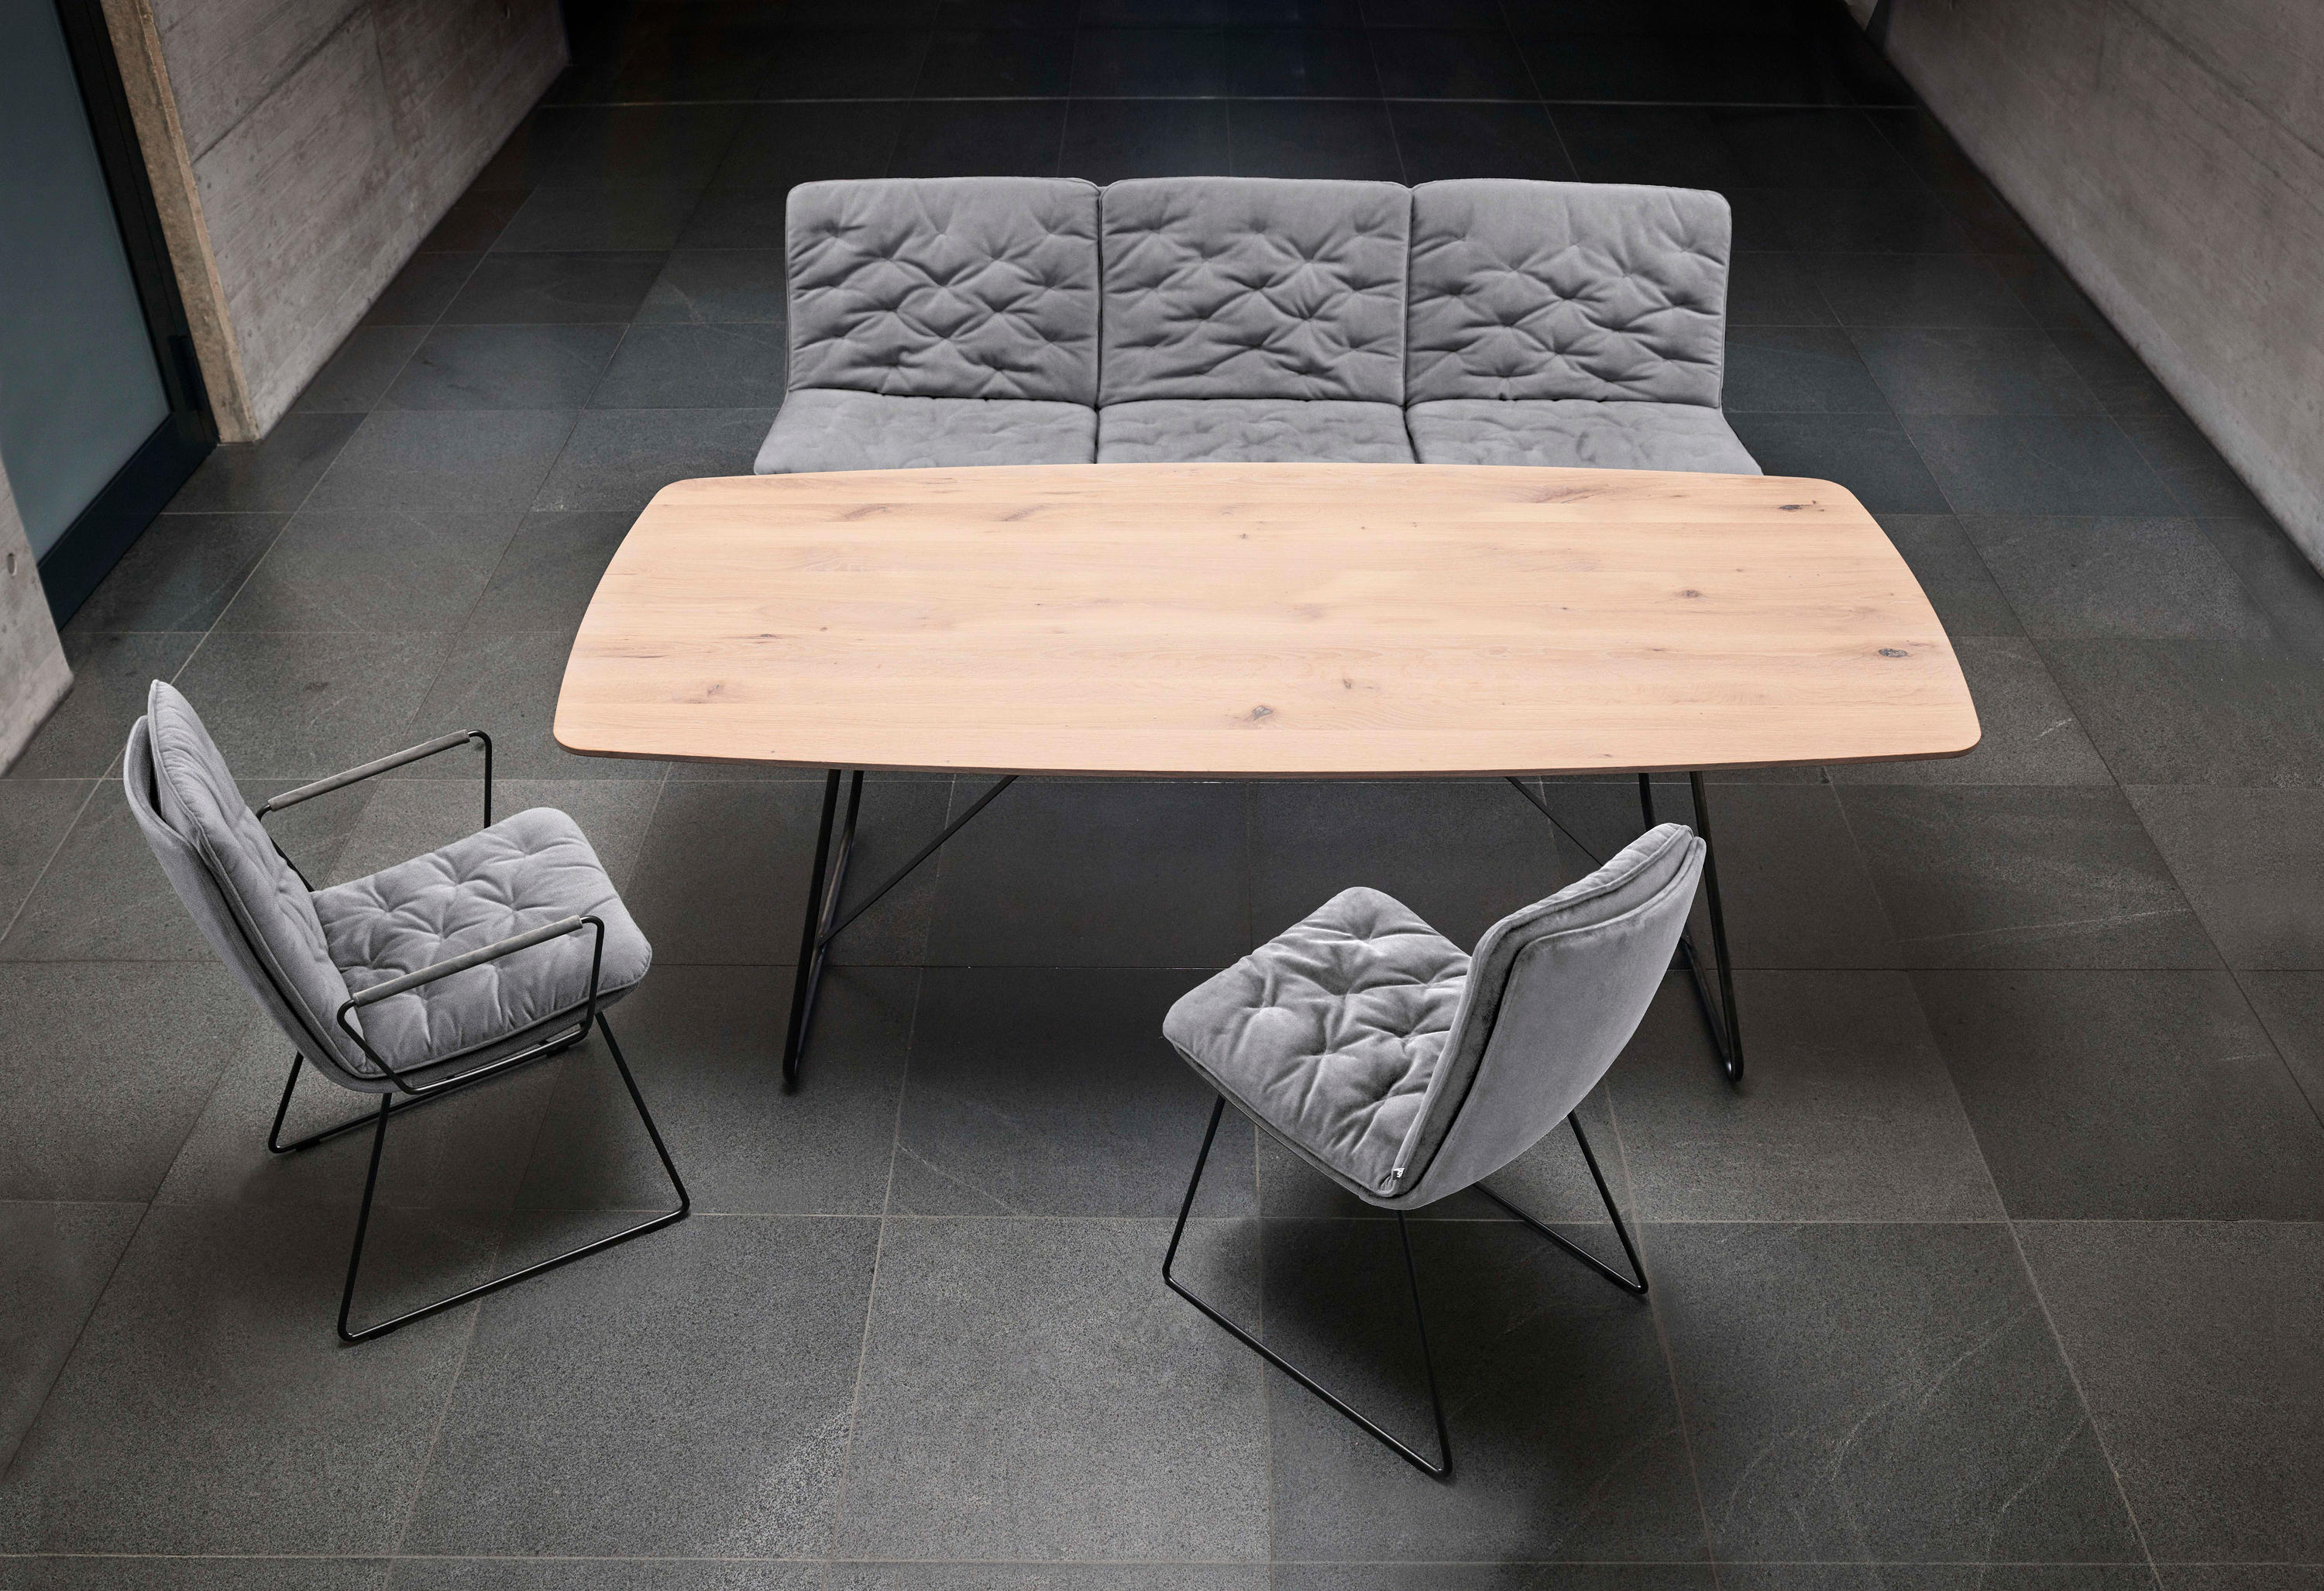 ARVA STITCH Side chair & designer furniture